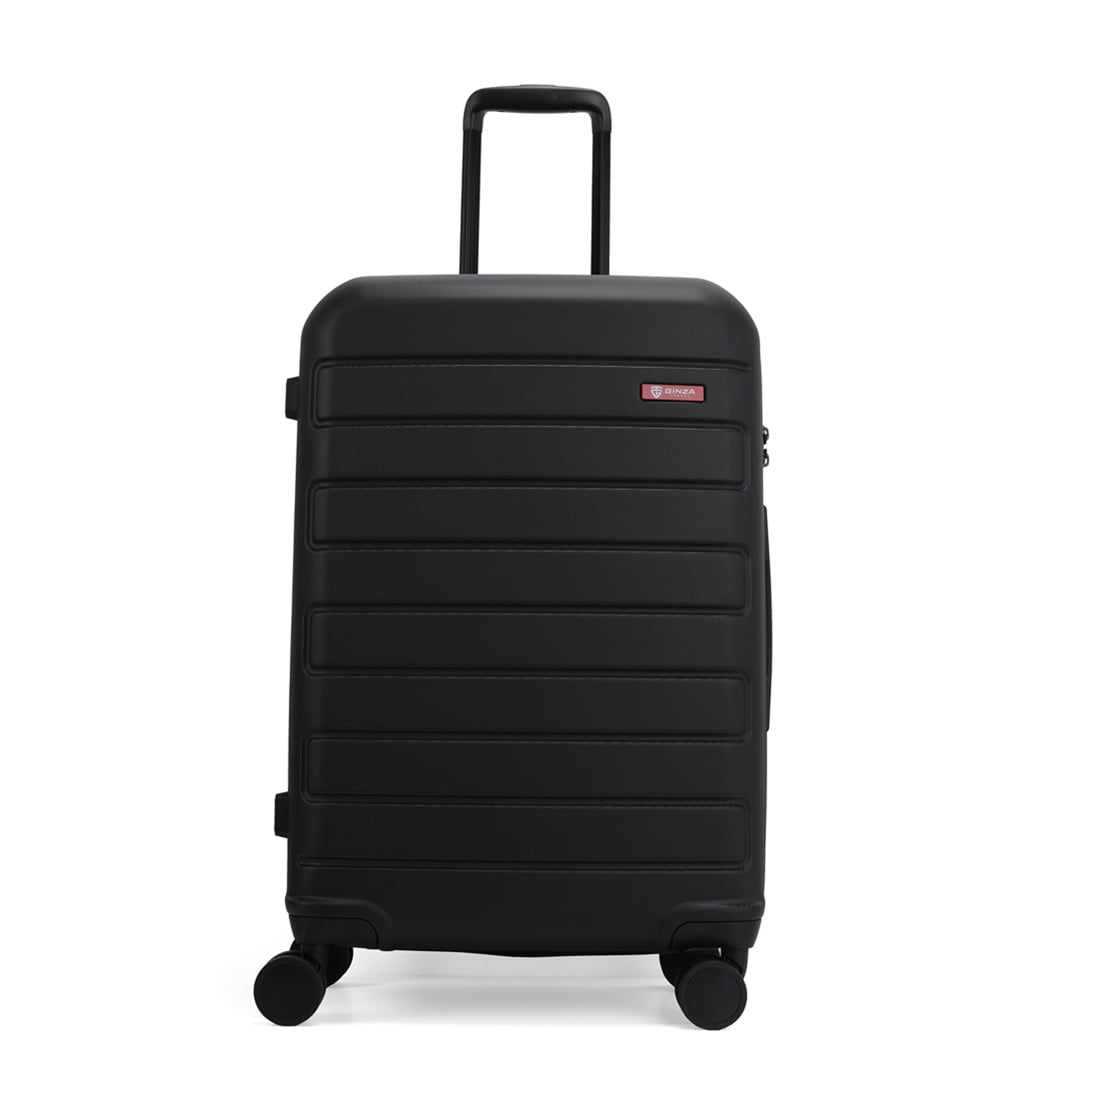 GinzaTravel 3Pcs Hard Side Spinner Luggage Set,20